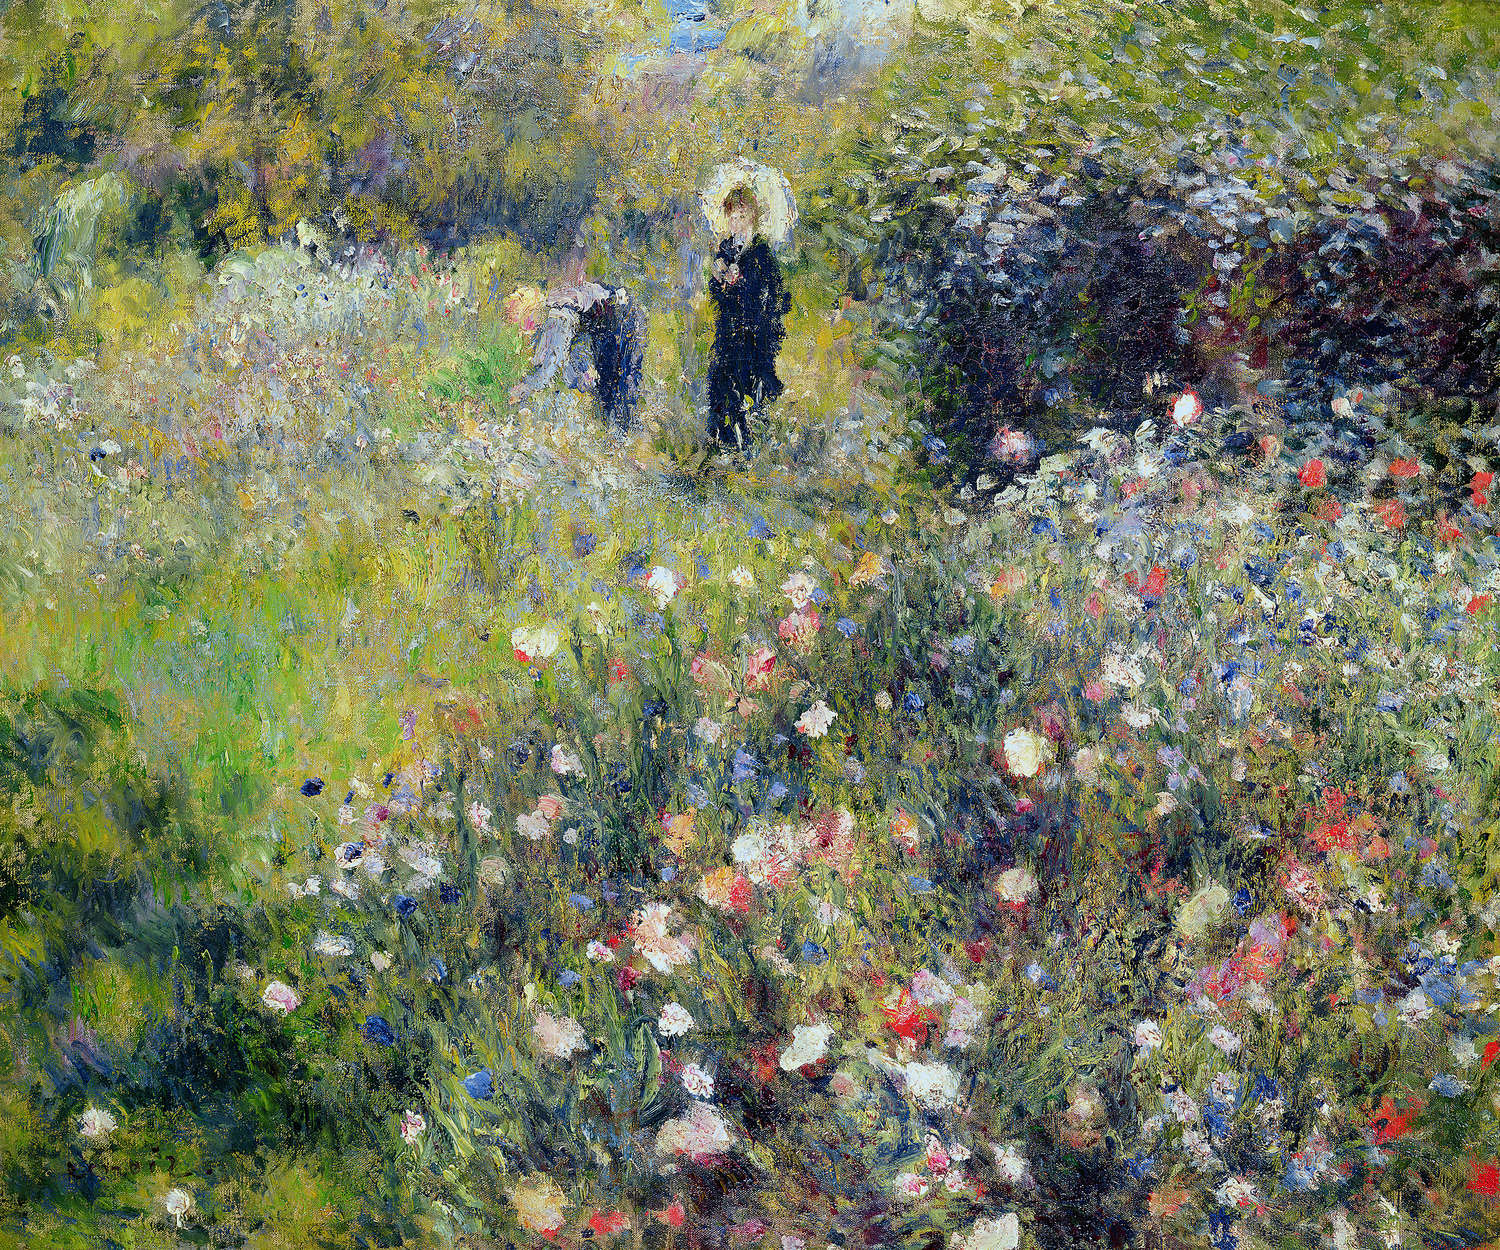             Papier peint "Femme à l'ombrelle dans un jardin" de Pierre Auguste Renoir
        